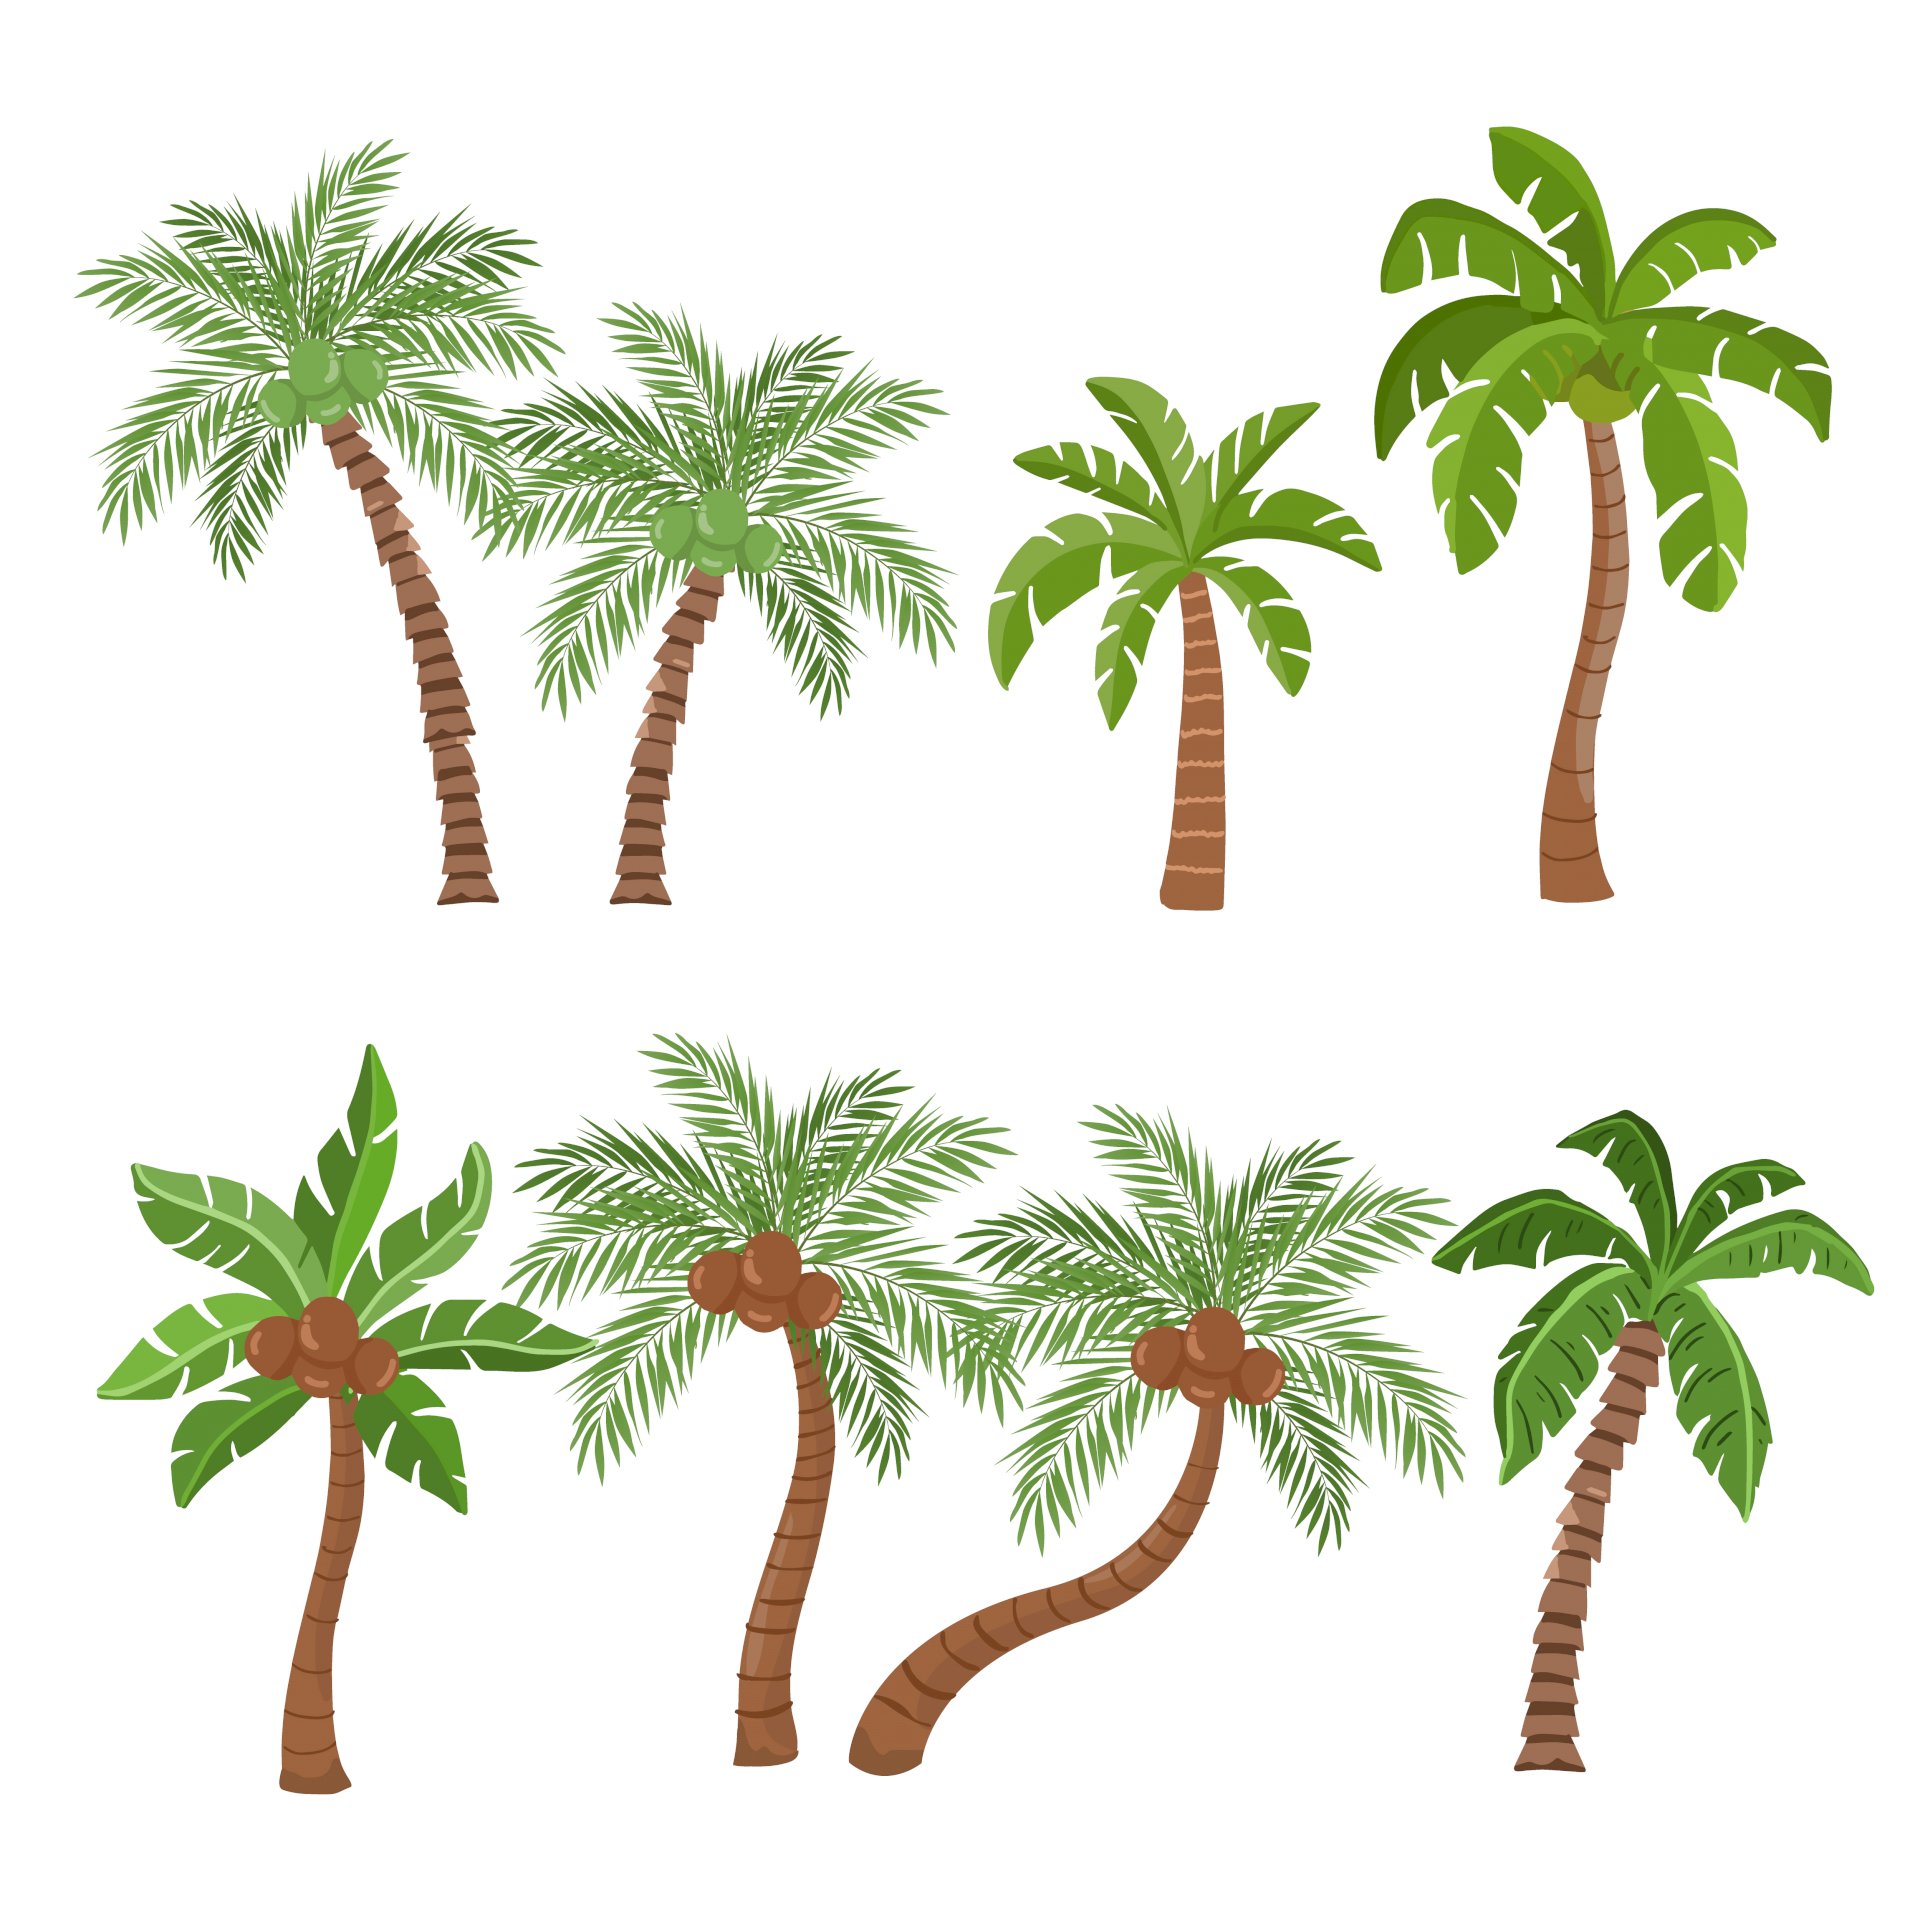 Một số hình vẽ cây dừa đẹp